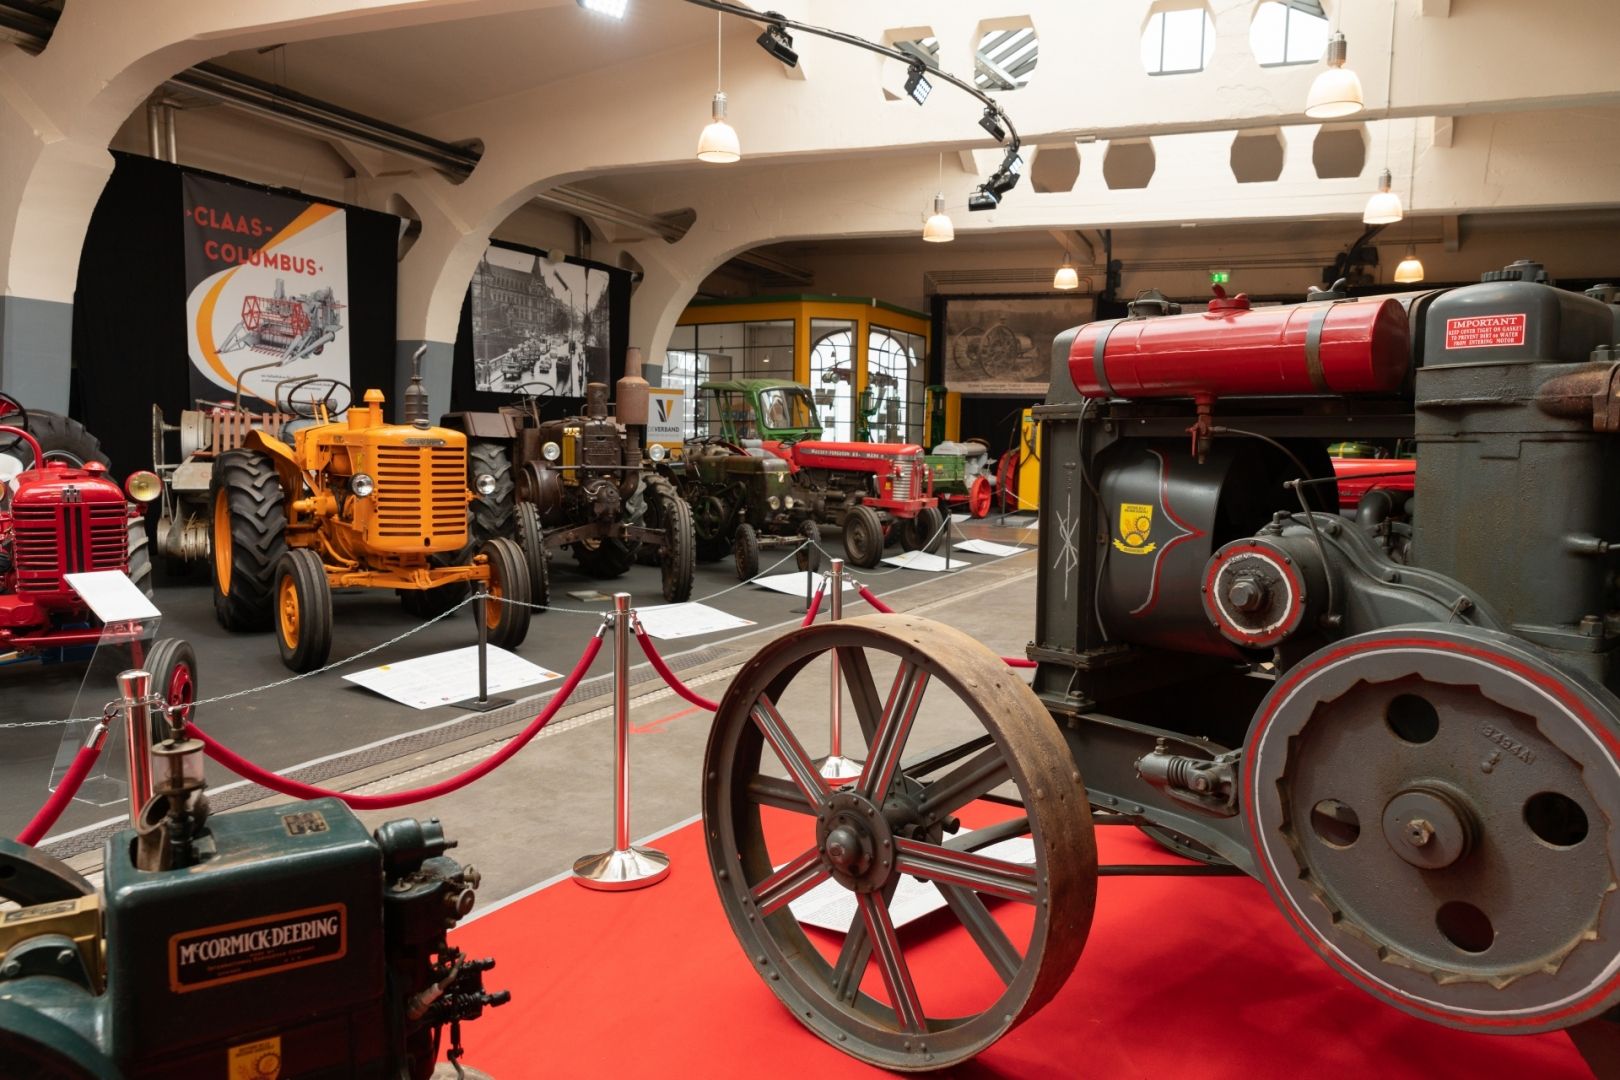 Musée National des vehicules histoiriques Diekirch